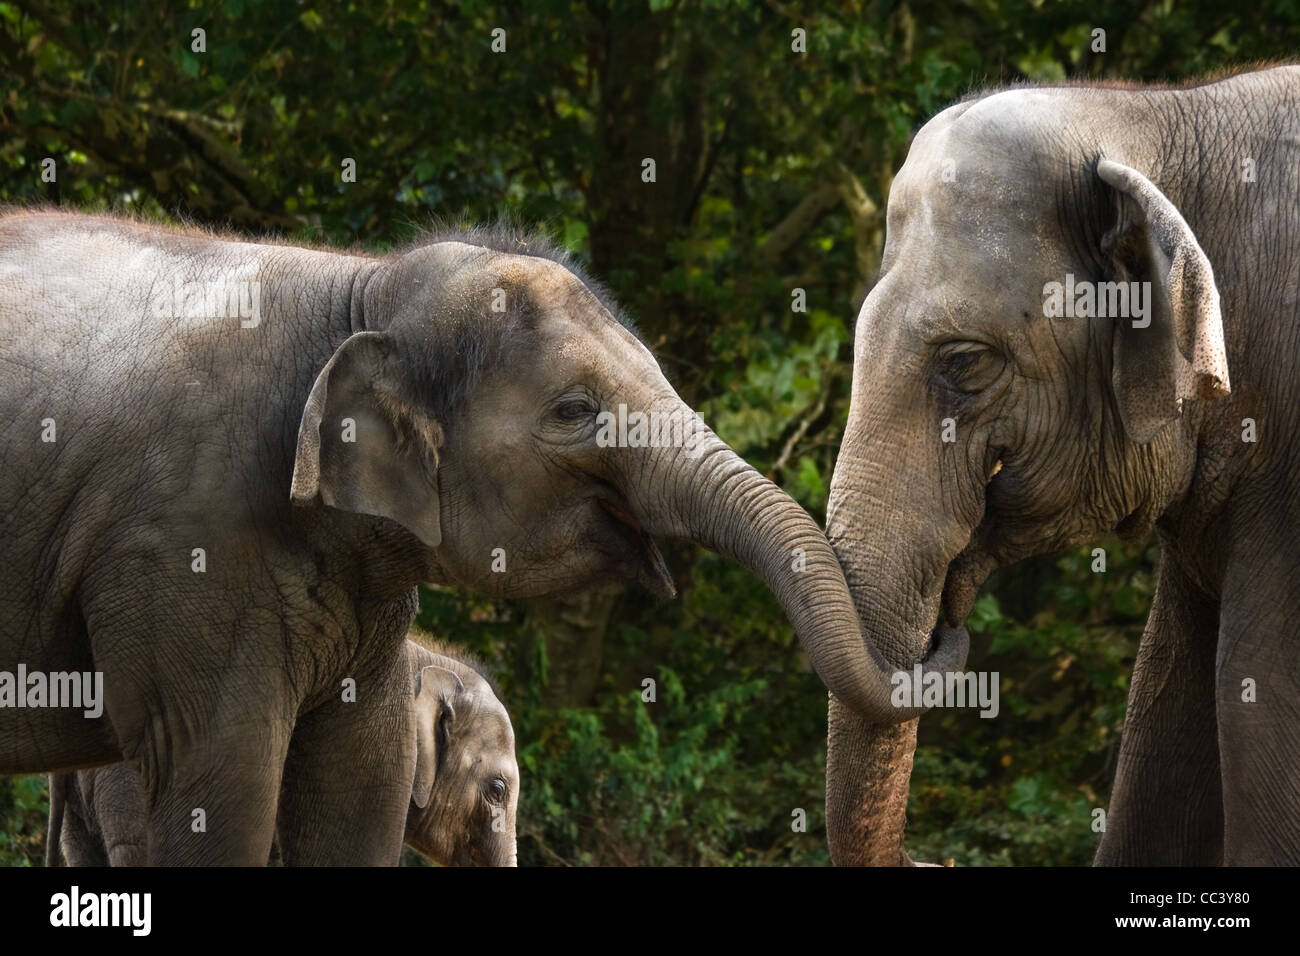 Dos mujeres de elefantes asiáticos divertirse tratando de robar algunos alimentos de cada uno de los demás - bebé elefante en segundo plano. Foto de stock